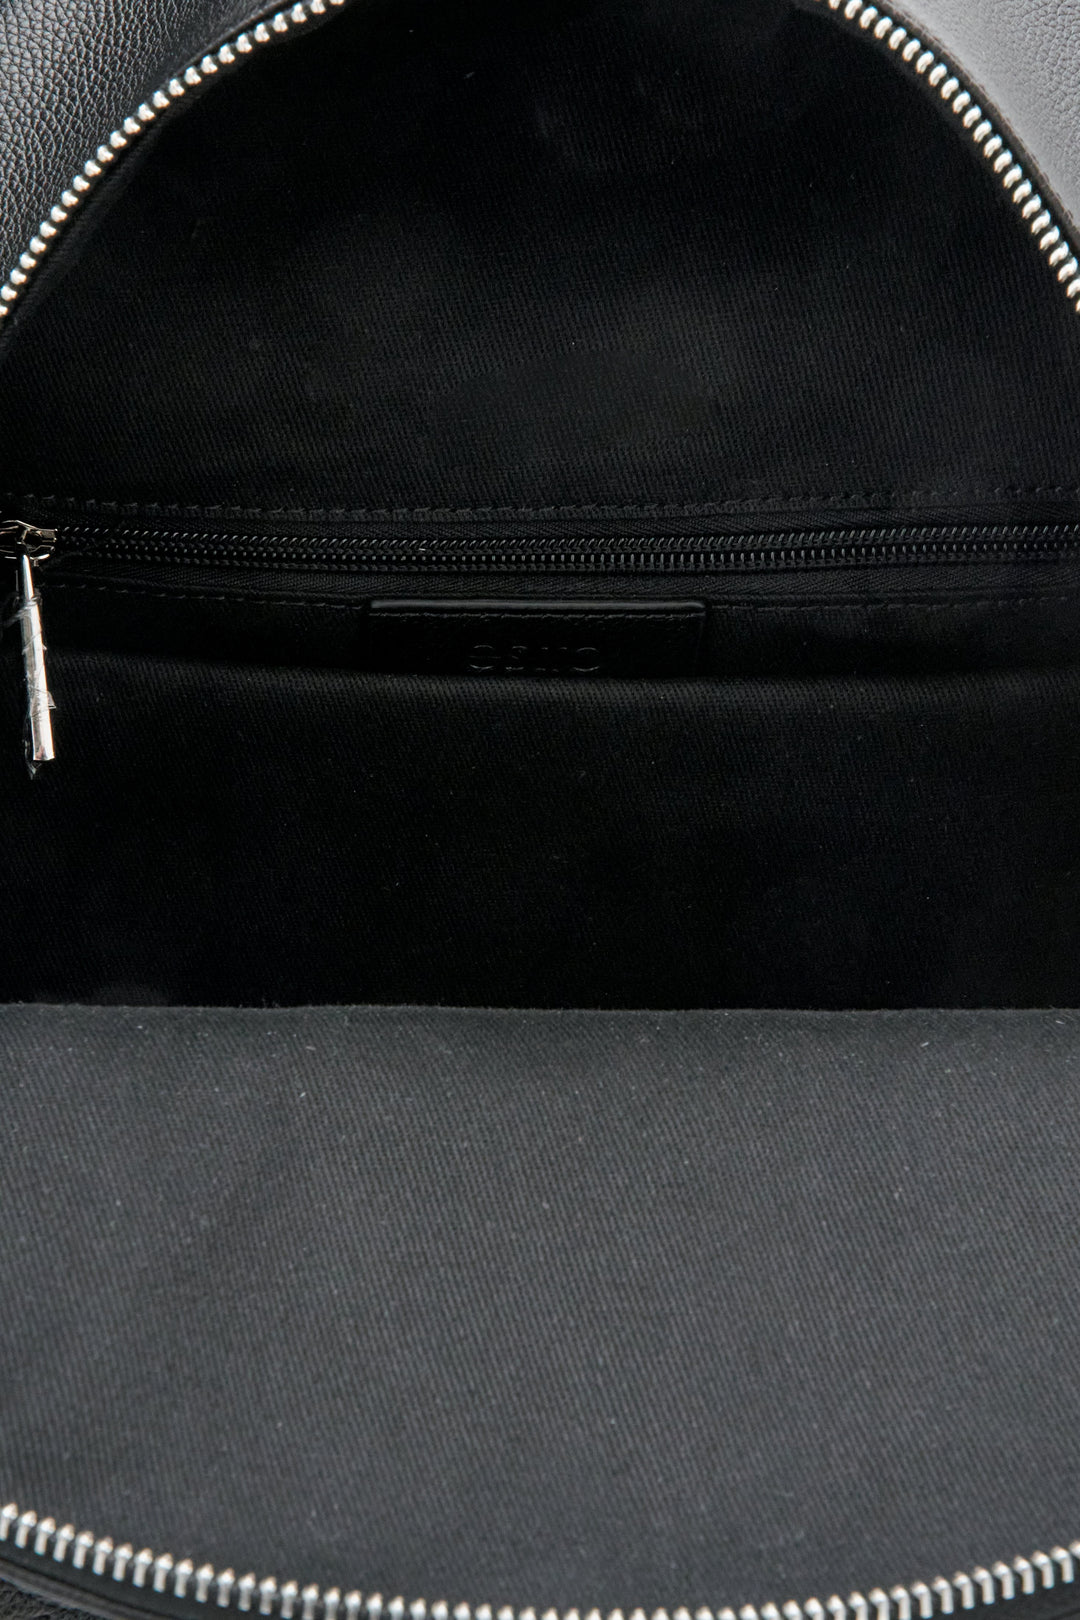 Skórzany czarny plecak damski Estro -prezentacja jednej z kieszeni.